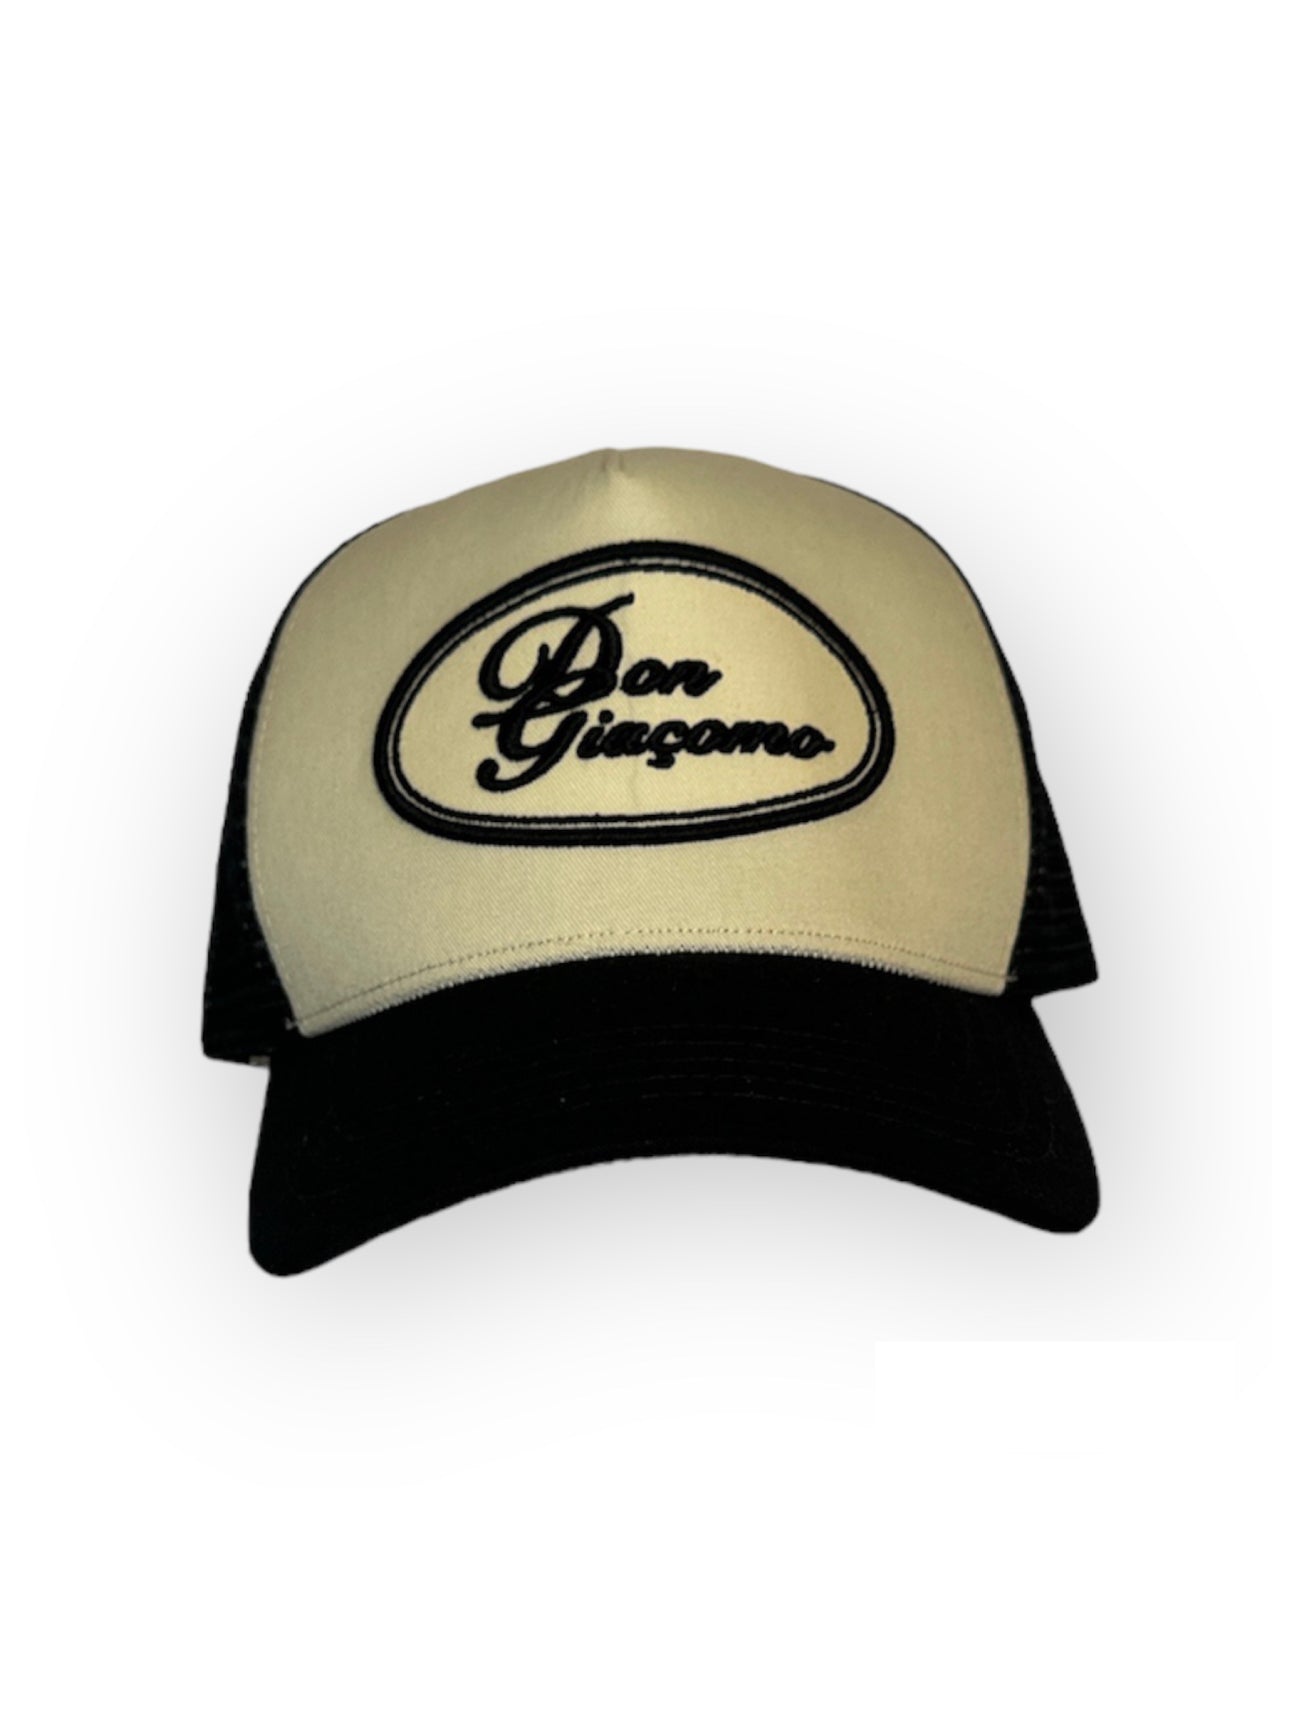 Don Giaçomo Oval Monogram Trucker Hat